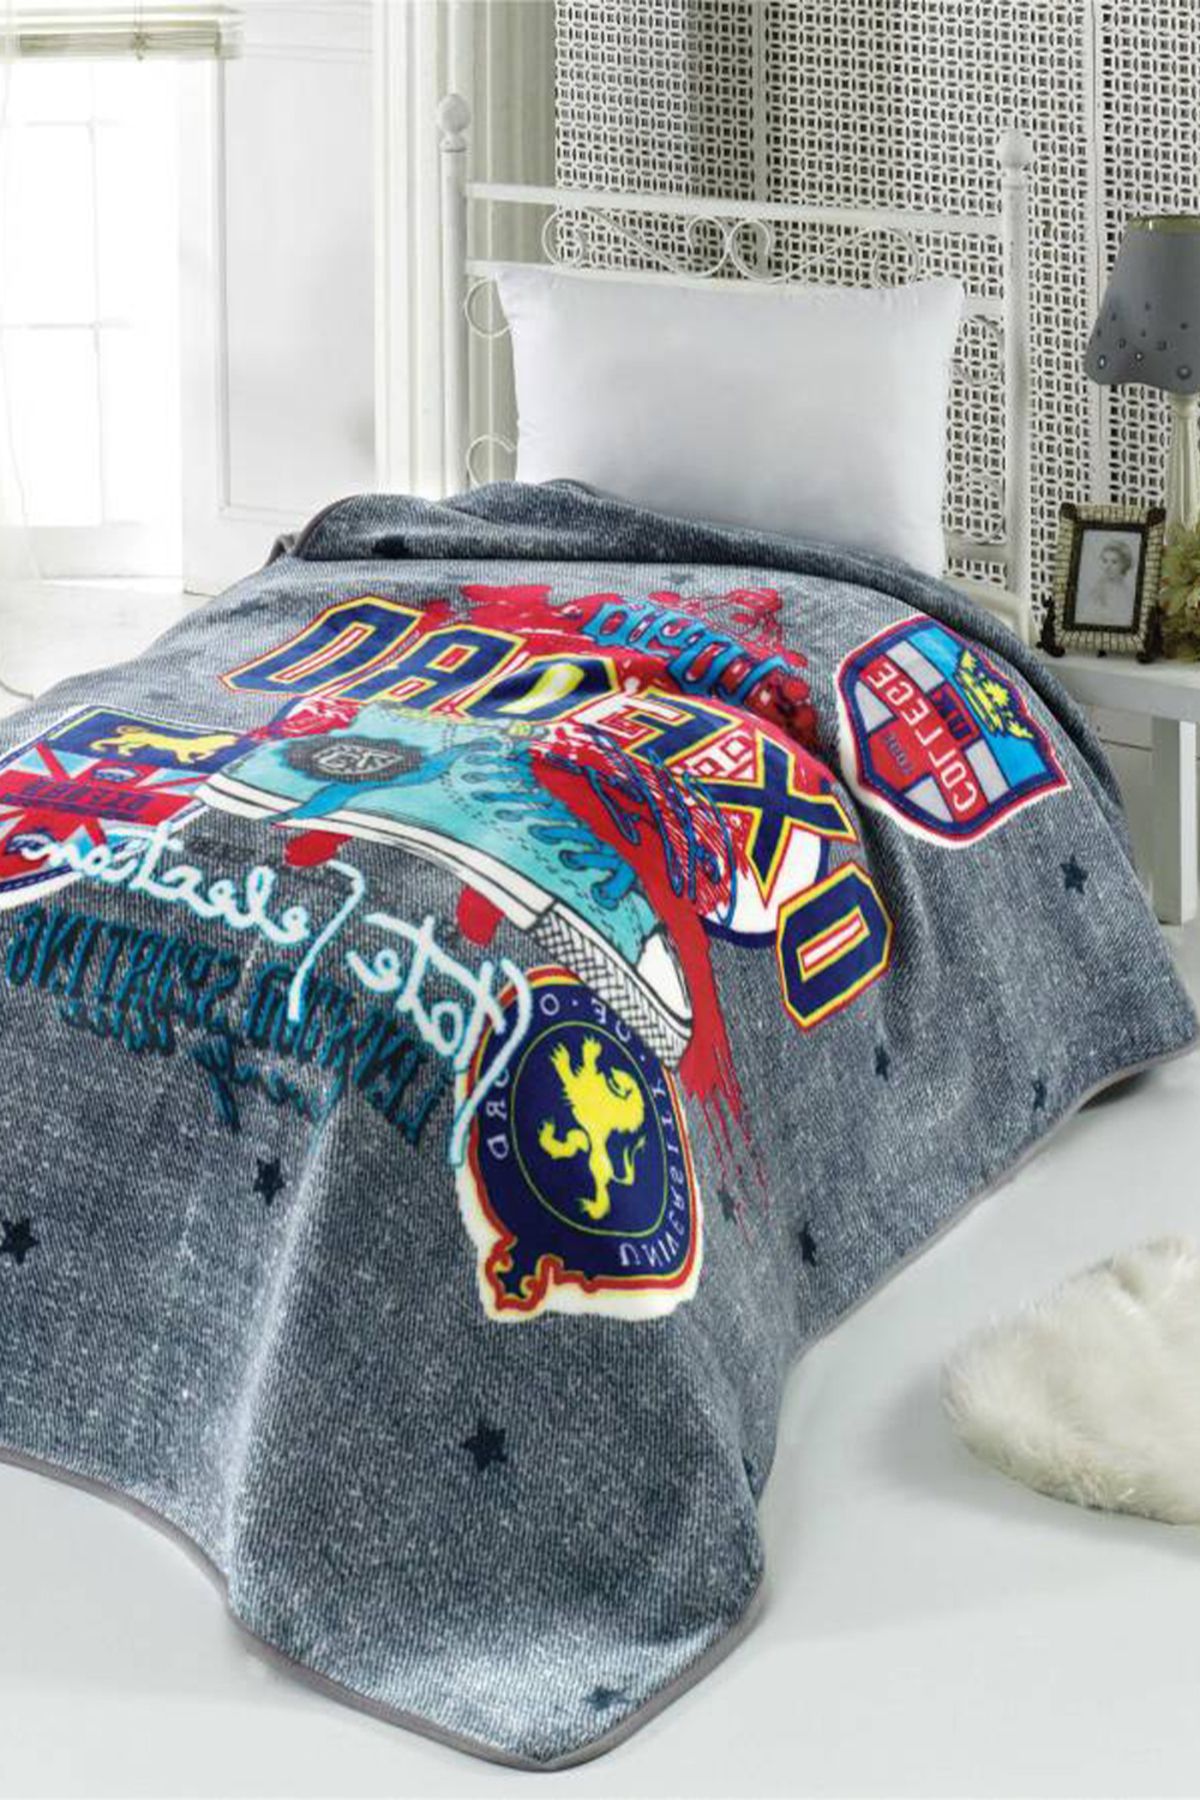 MİNK Mink Collage Standart Licence Tek Kişilik Battaniye/Yatak Örtüsü 160*220 cm